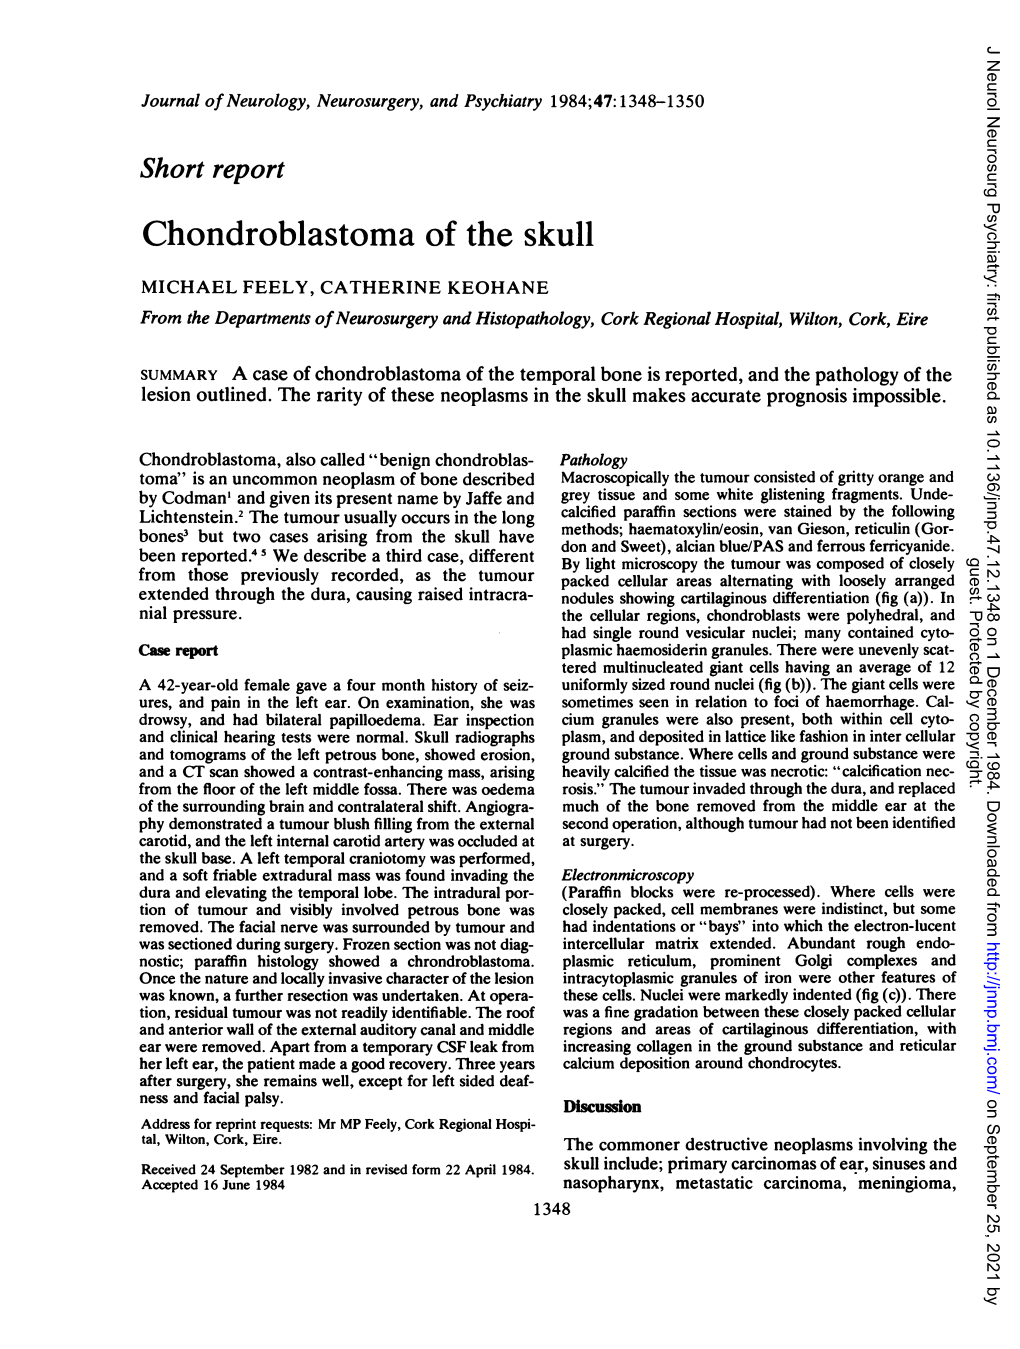 Chondroblastoma of the Skull